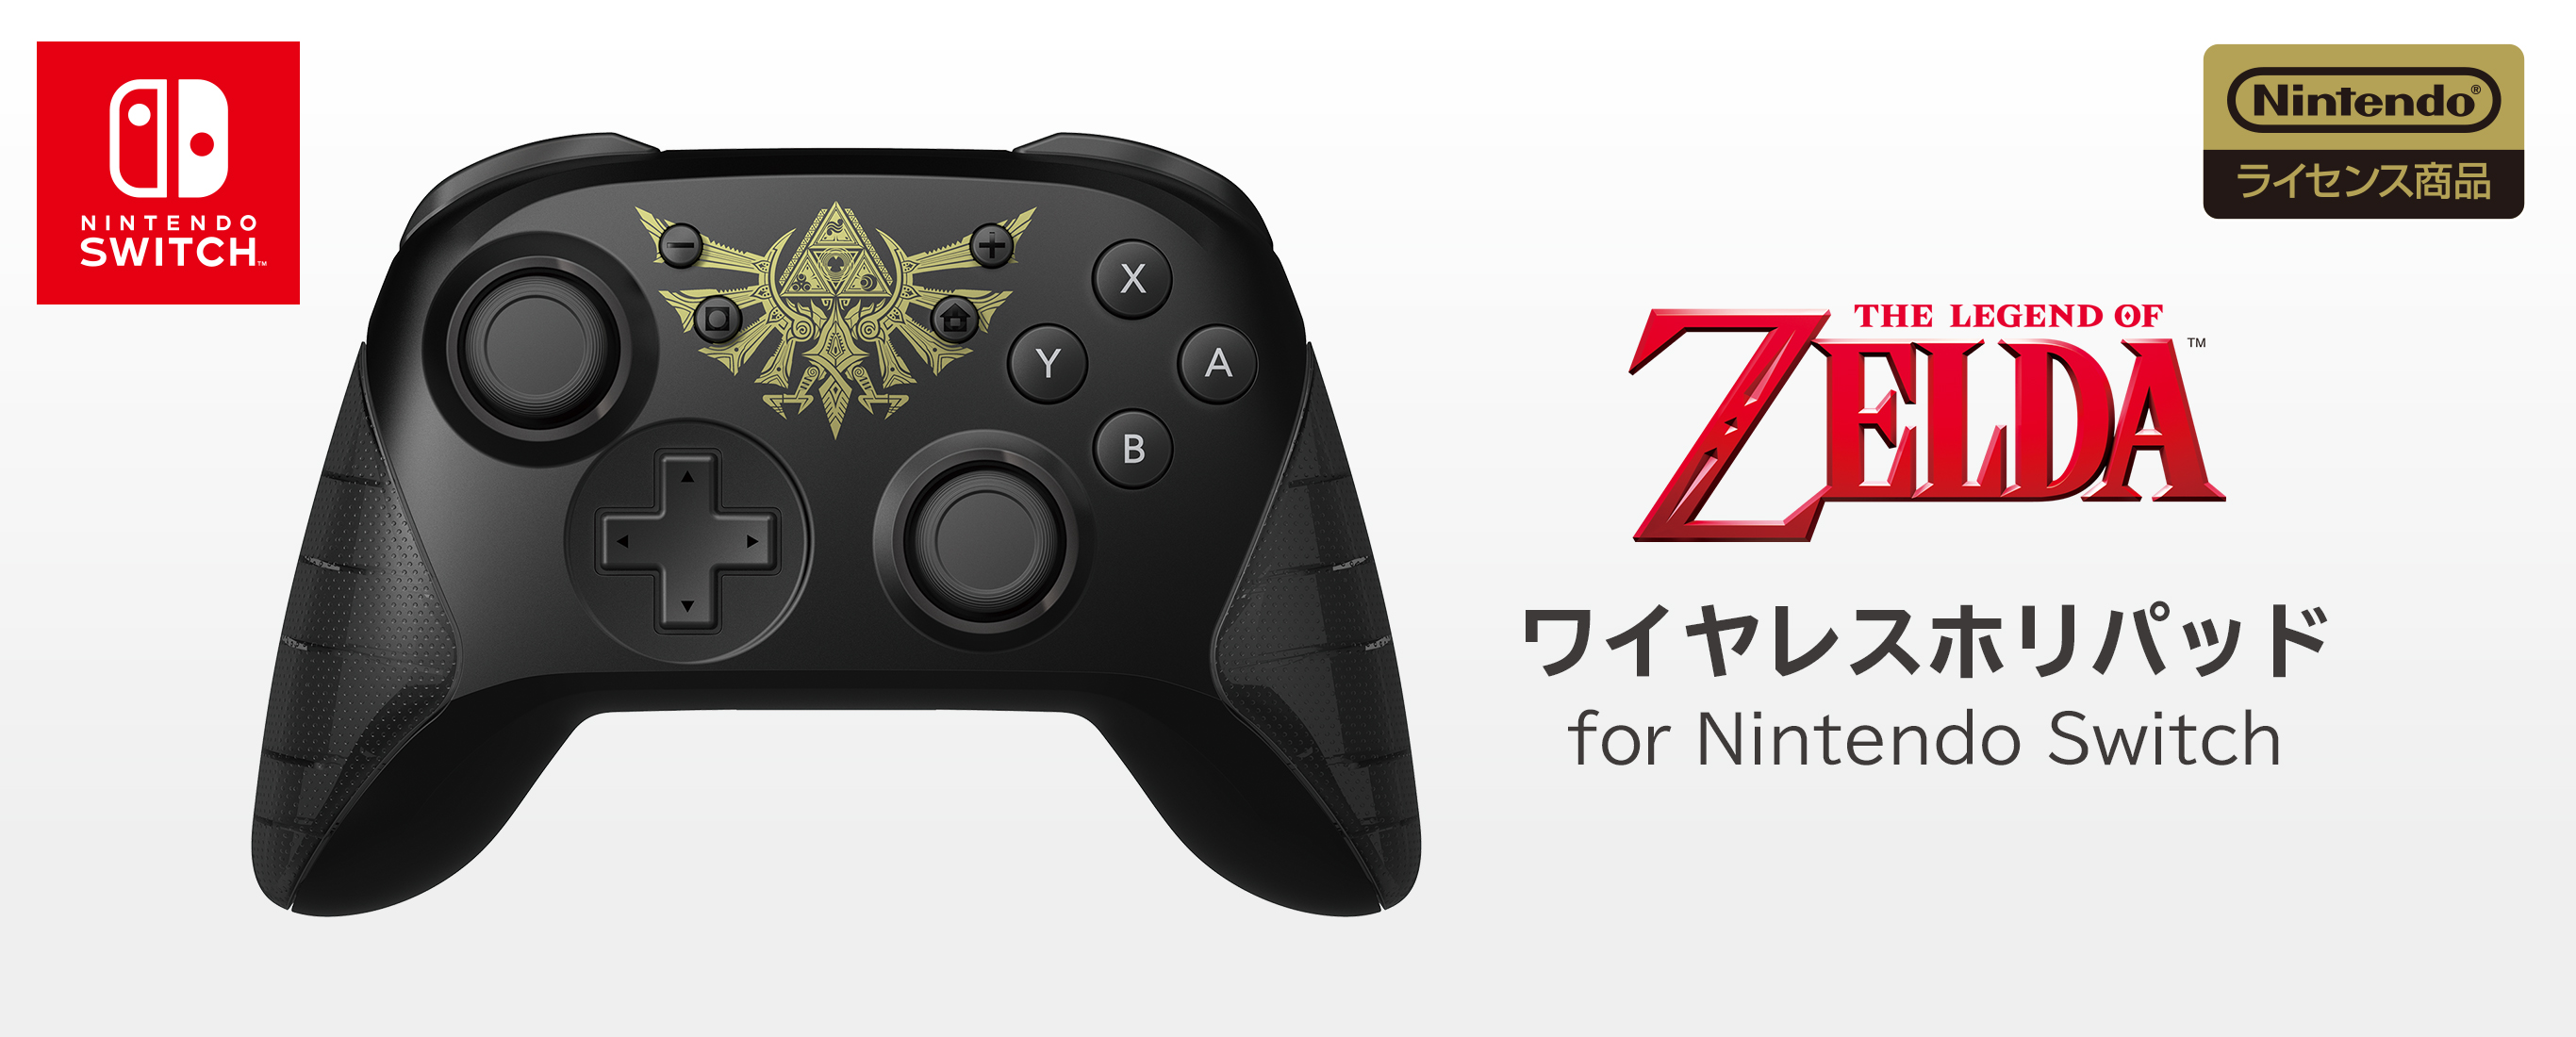 株式会社 HORI | ワイヤレスホリパッド for Nintendo Switch ゼルダの伝説